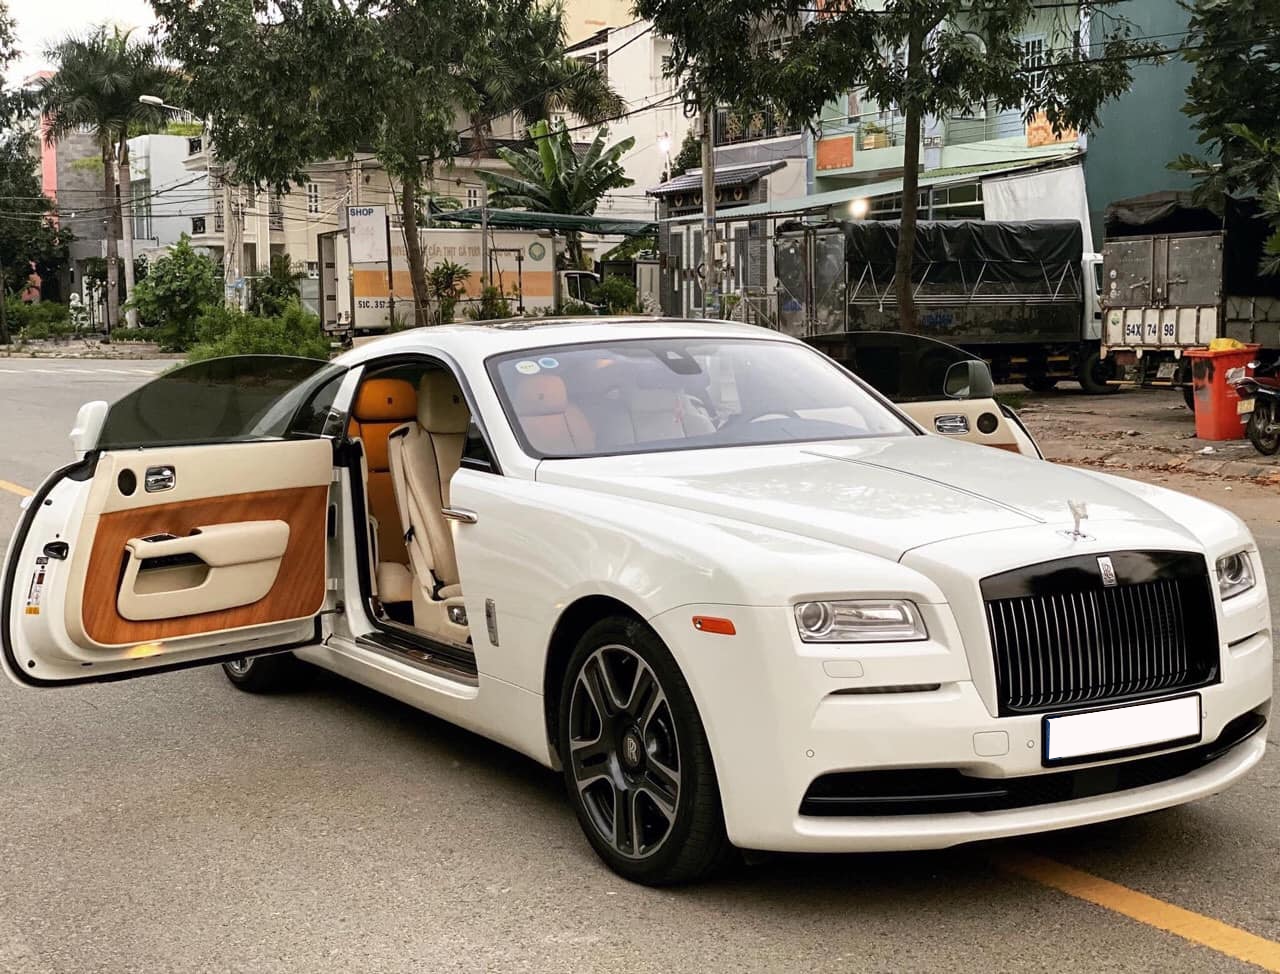 Hàng hiếm Rolls-Royce Wraith được rao bán cùng lời chia sẻ: Mua mới hơn 30 tỷ, bán cũ hơn 13 tỷ - Ảnh 1.